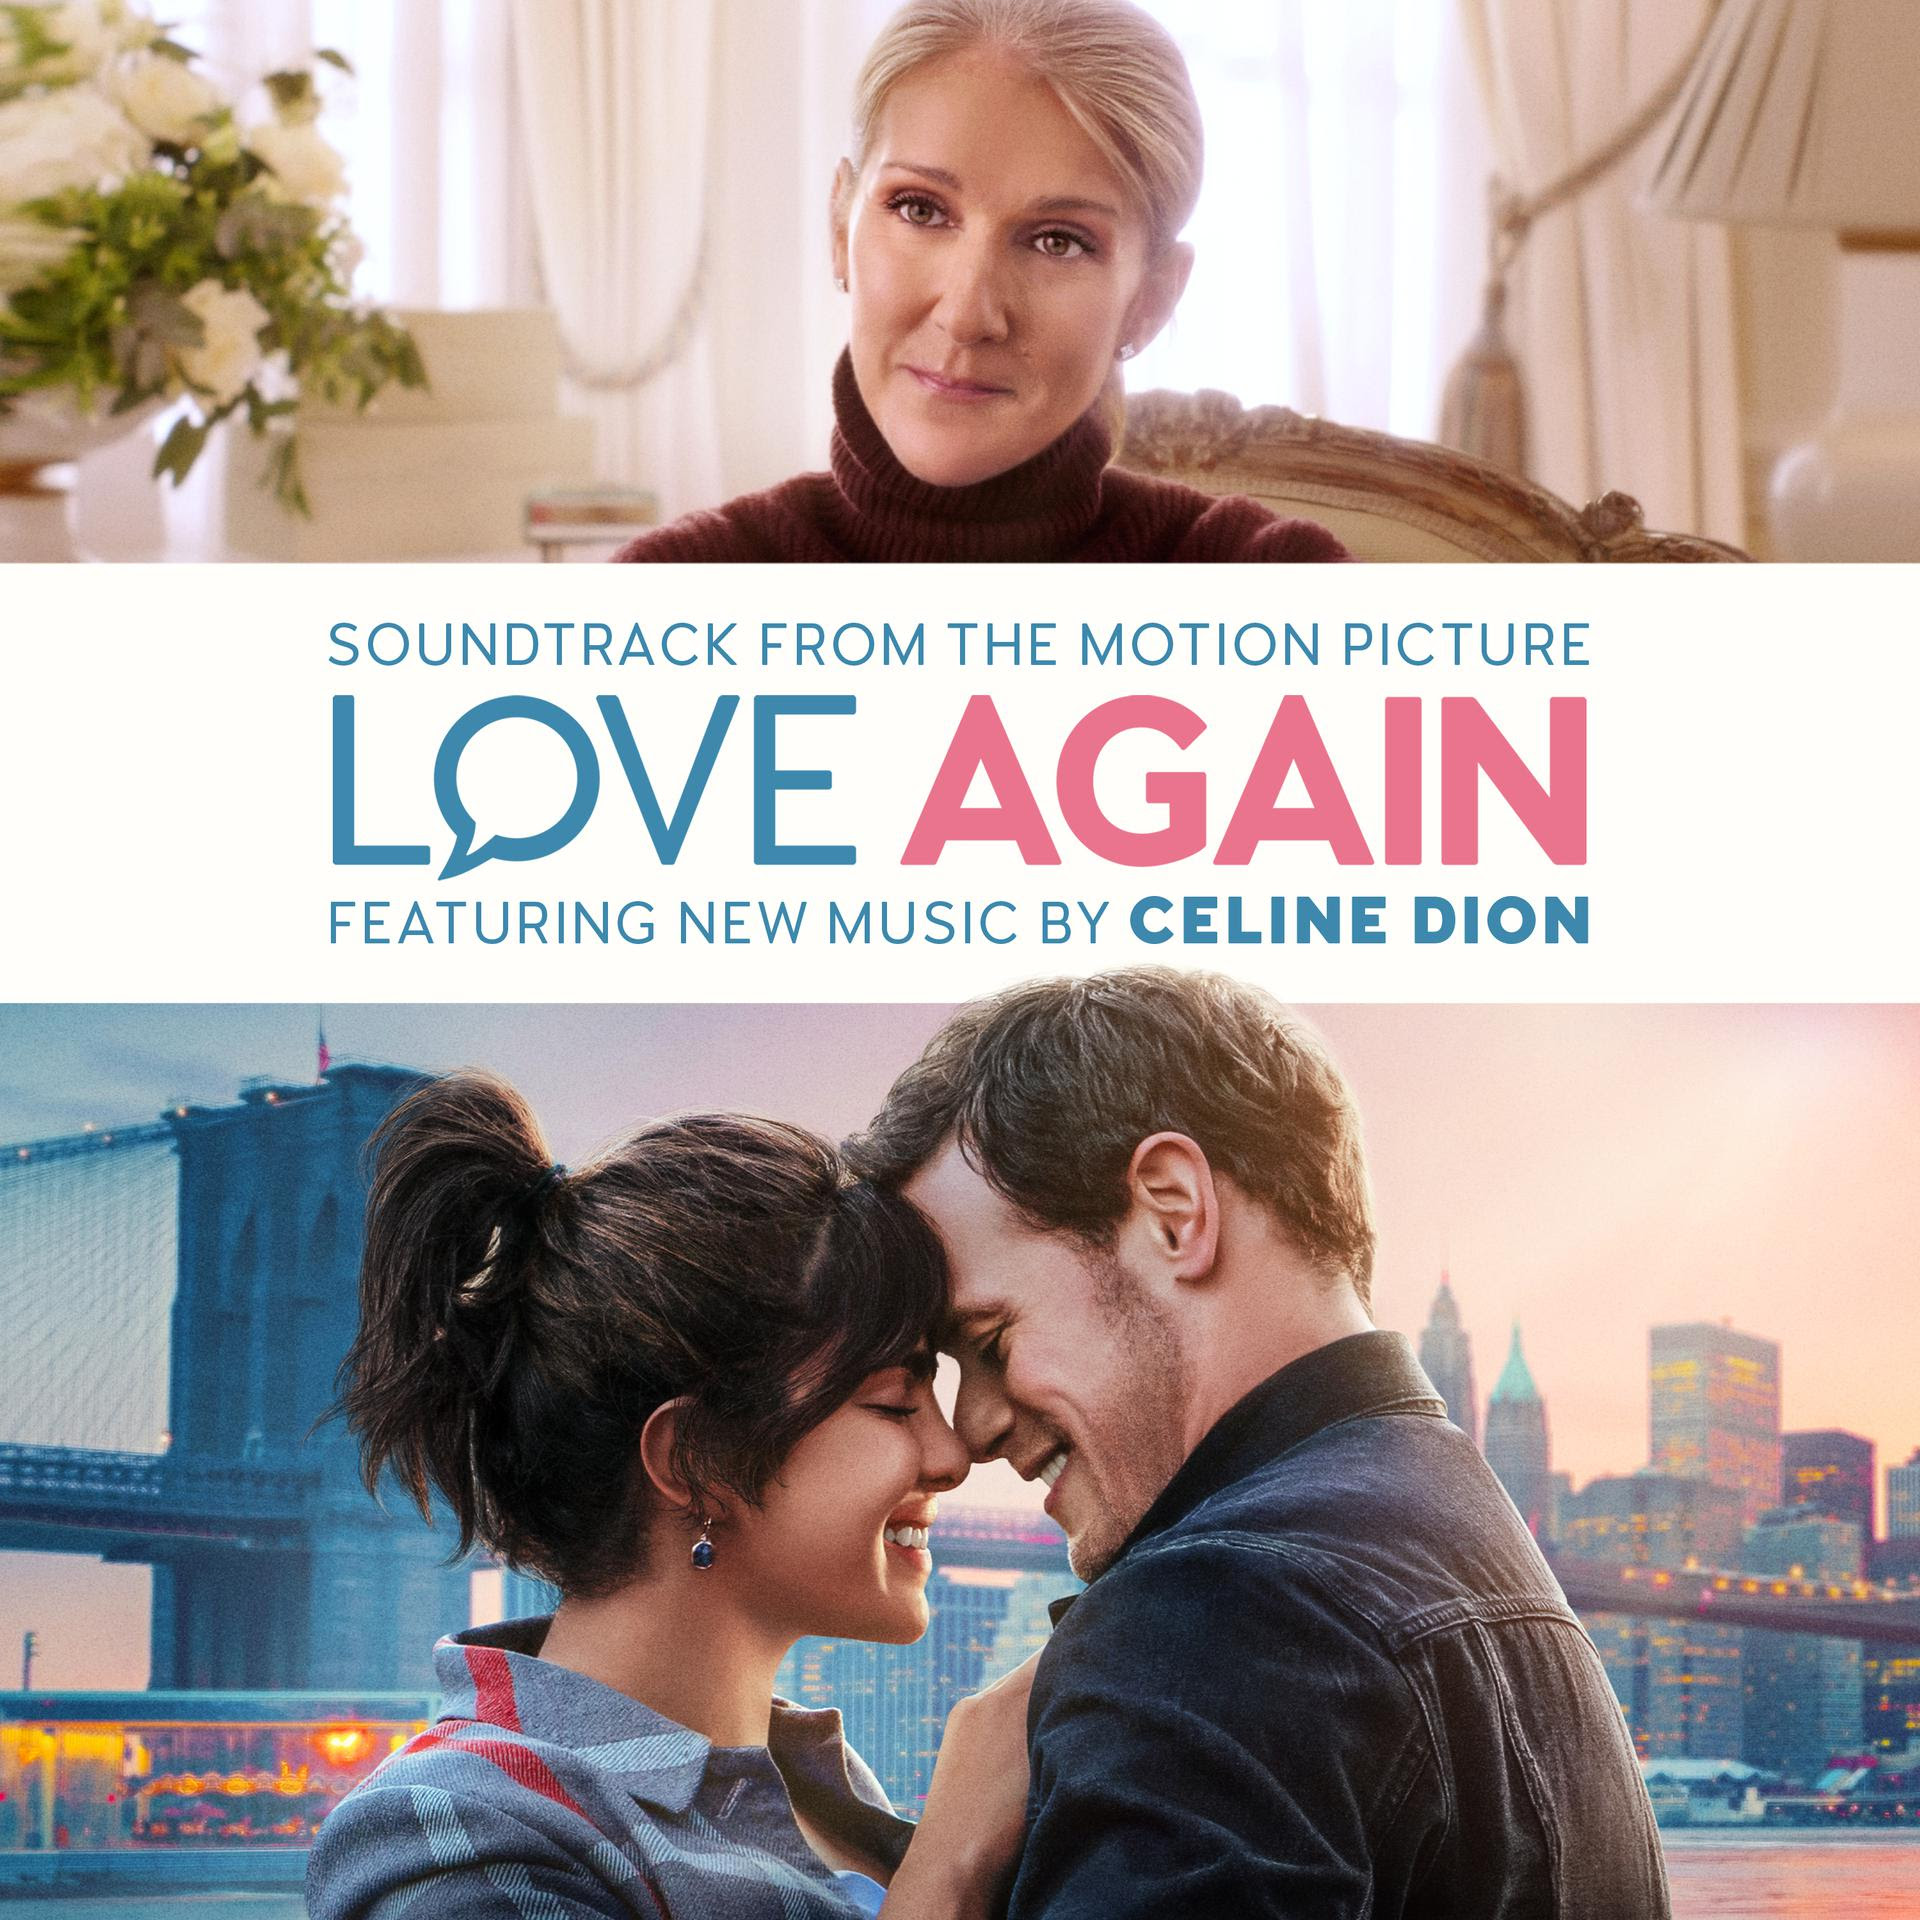 Celine Dion: Love Again (banda sonora de la película) se lanza el 12 de mayo de 2023